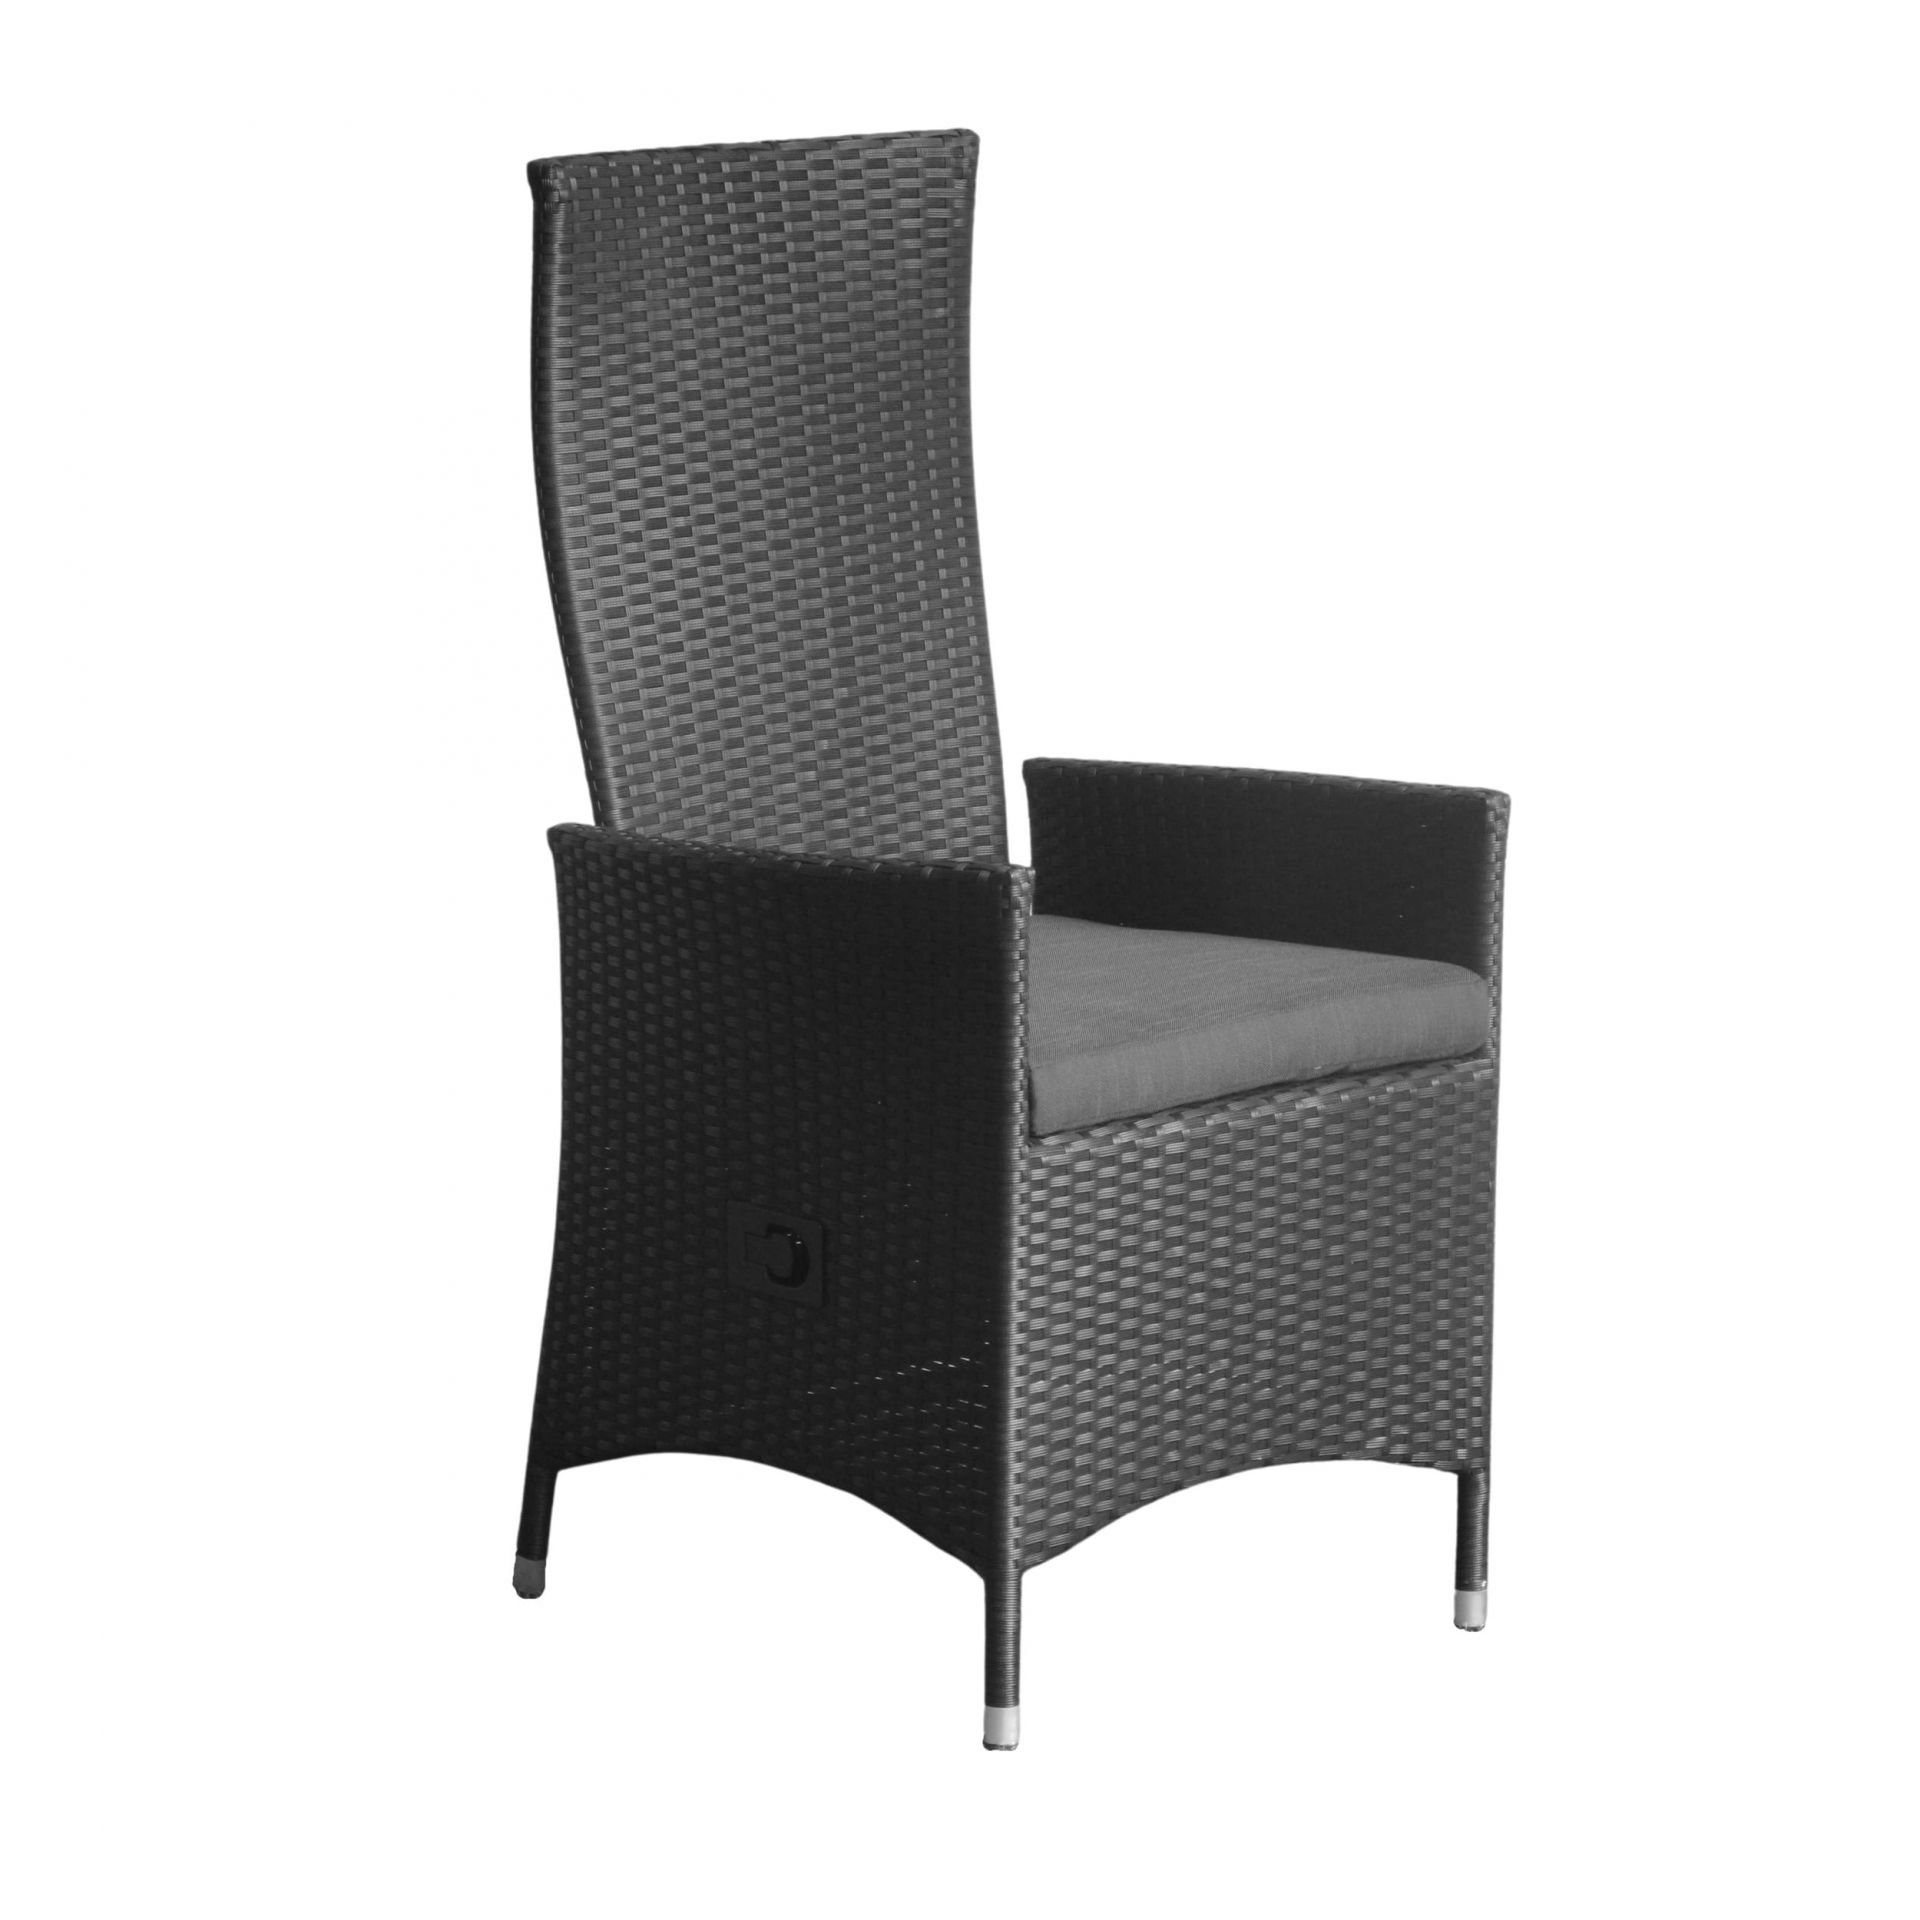 dasmöbelwerk Gartenstuhl Positionsstuhl Lissabon Gartenstuhl Dining mit Kissen schwarz, stufenlos verstellbarer Rückenlehne